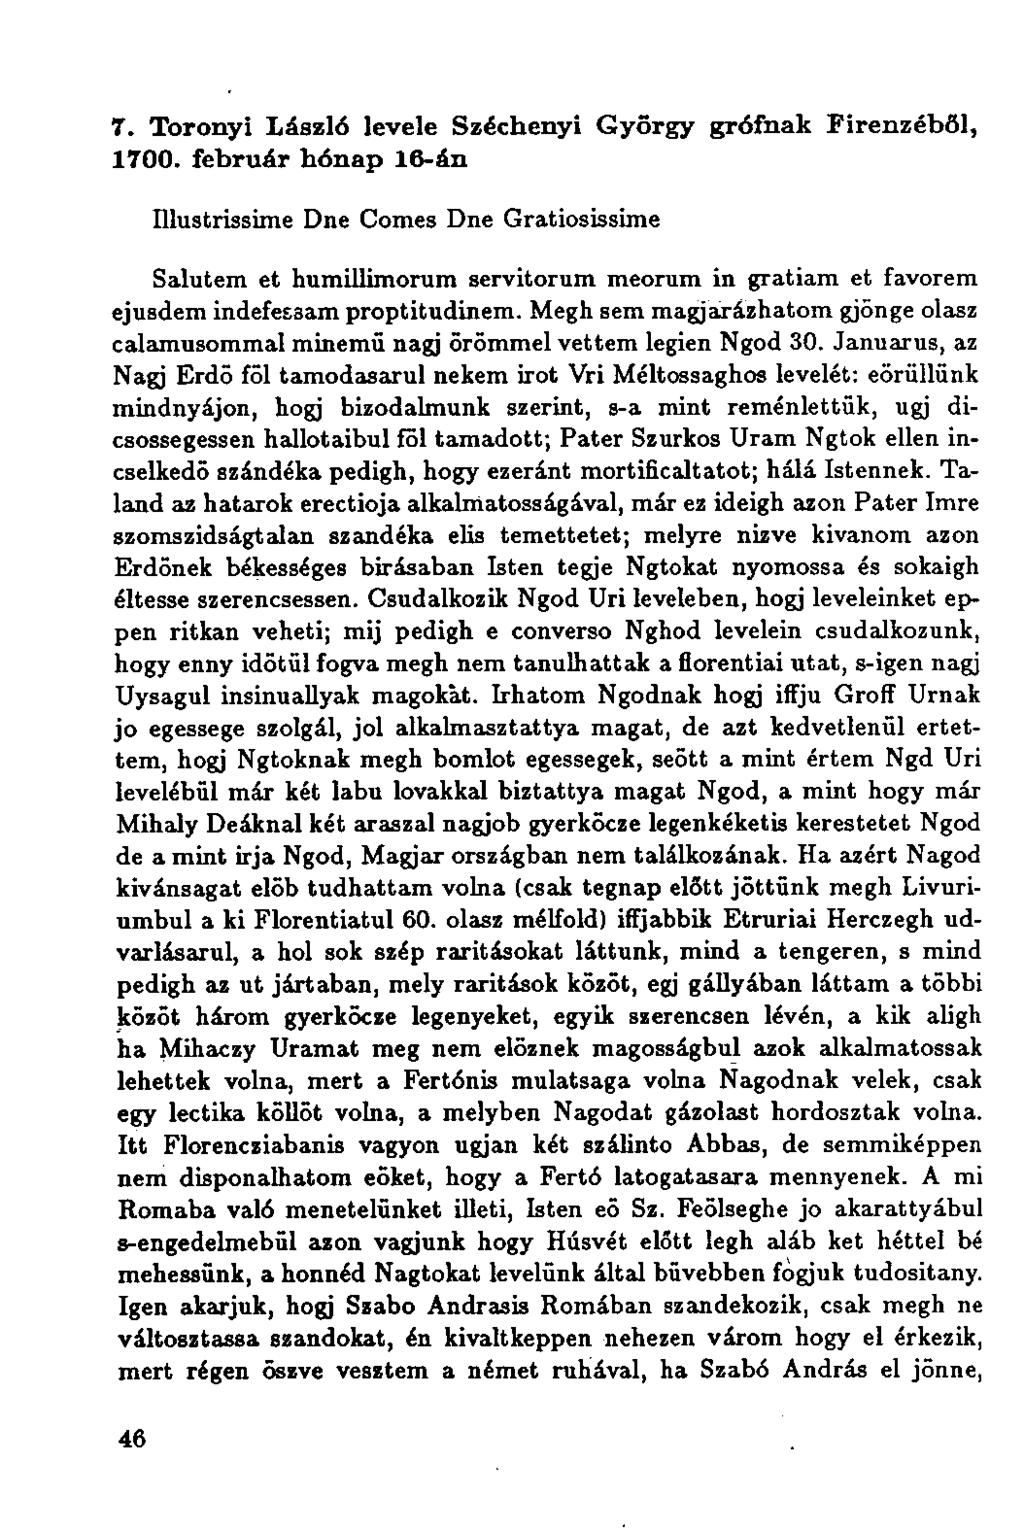 7. Toronyi László levele Széchenyi Győrgy grófnak Firenzéből, 1700.